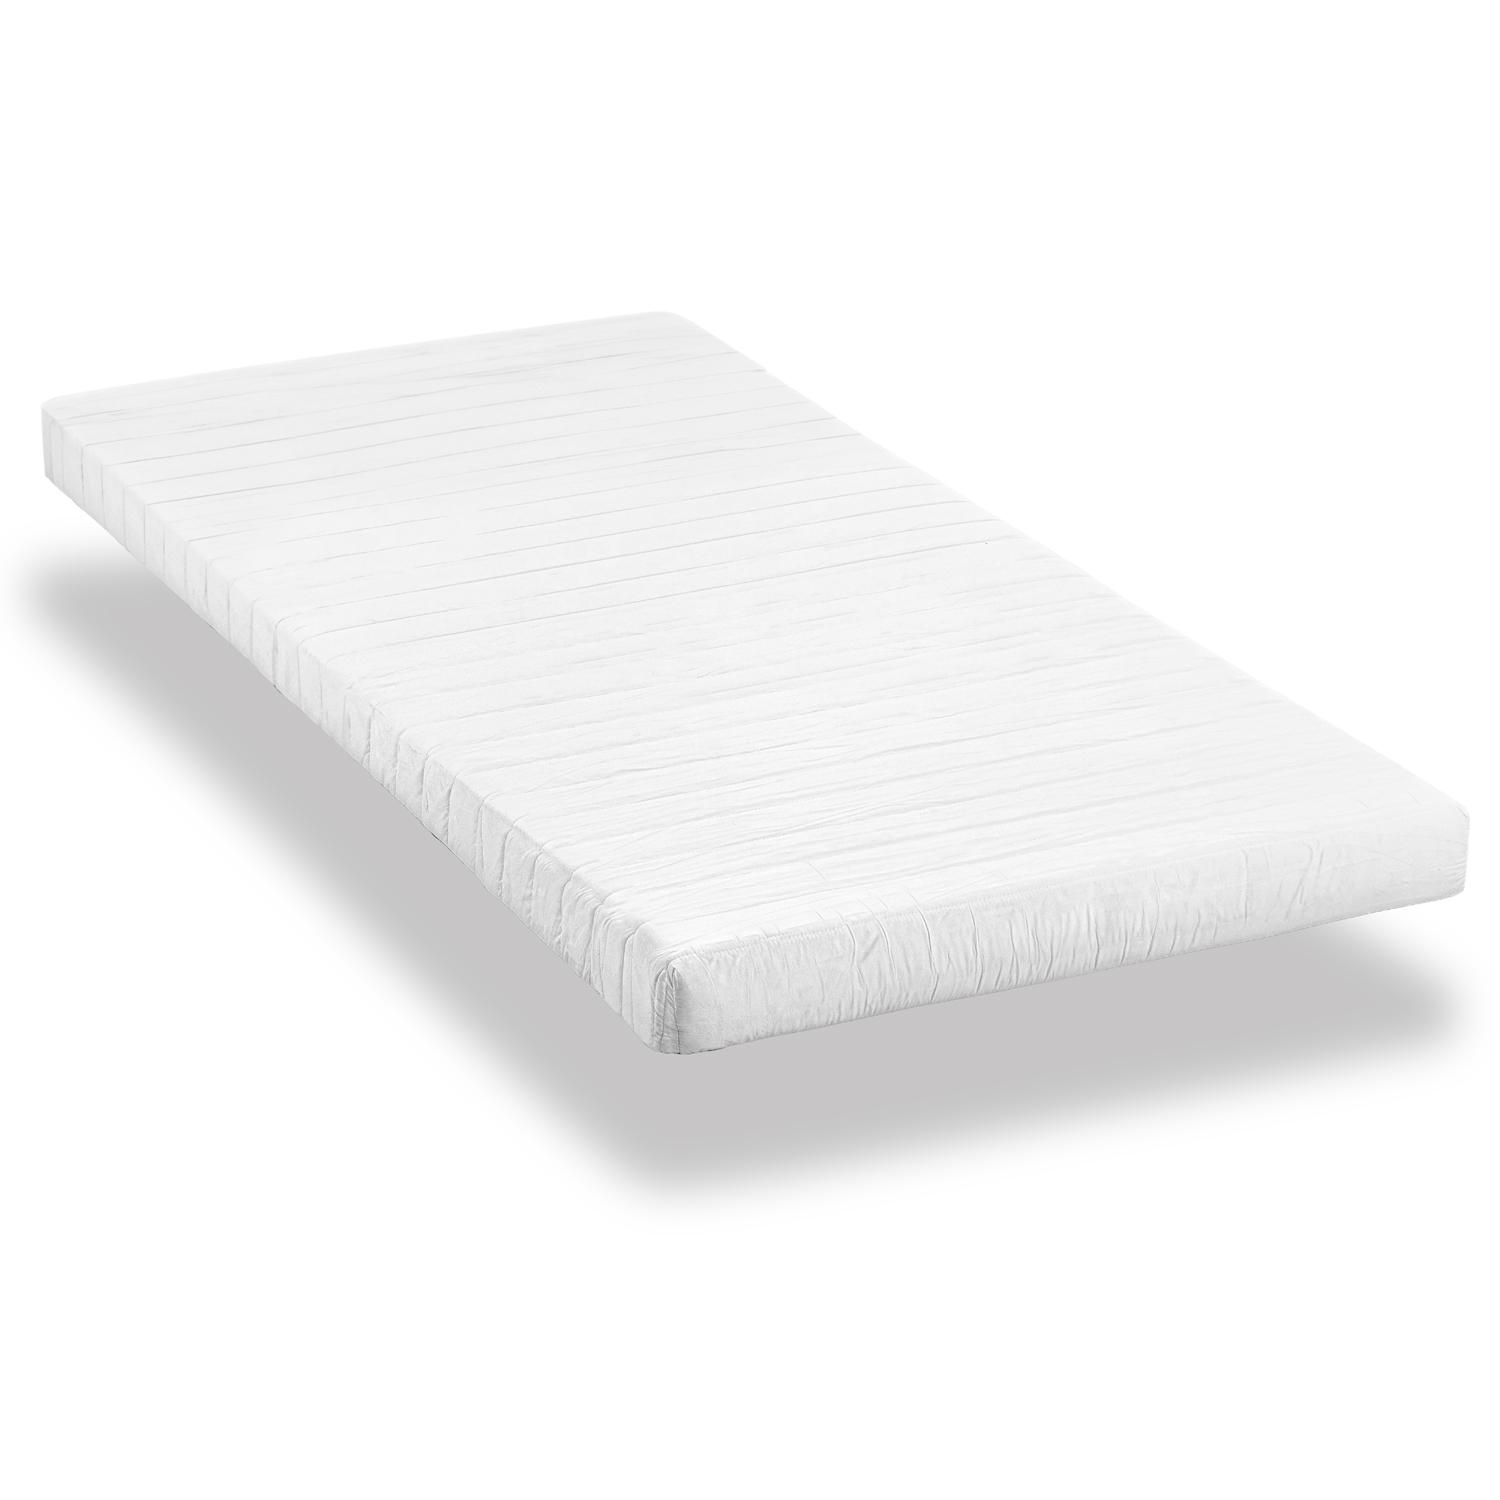 Comfort foam mattress K10 90 x 200 cm, height 10 cm, firmness level H3